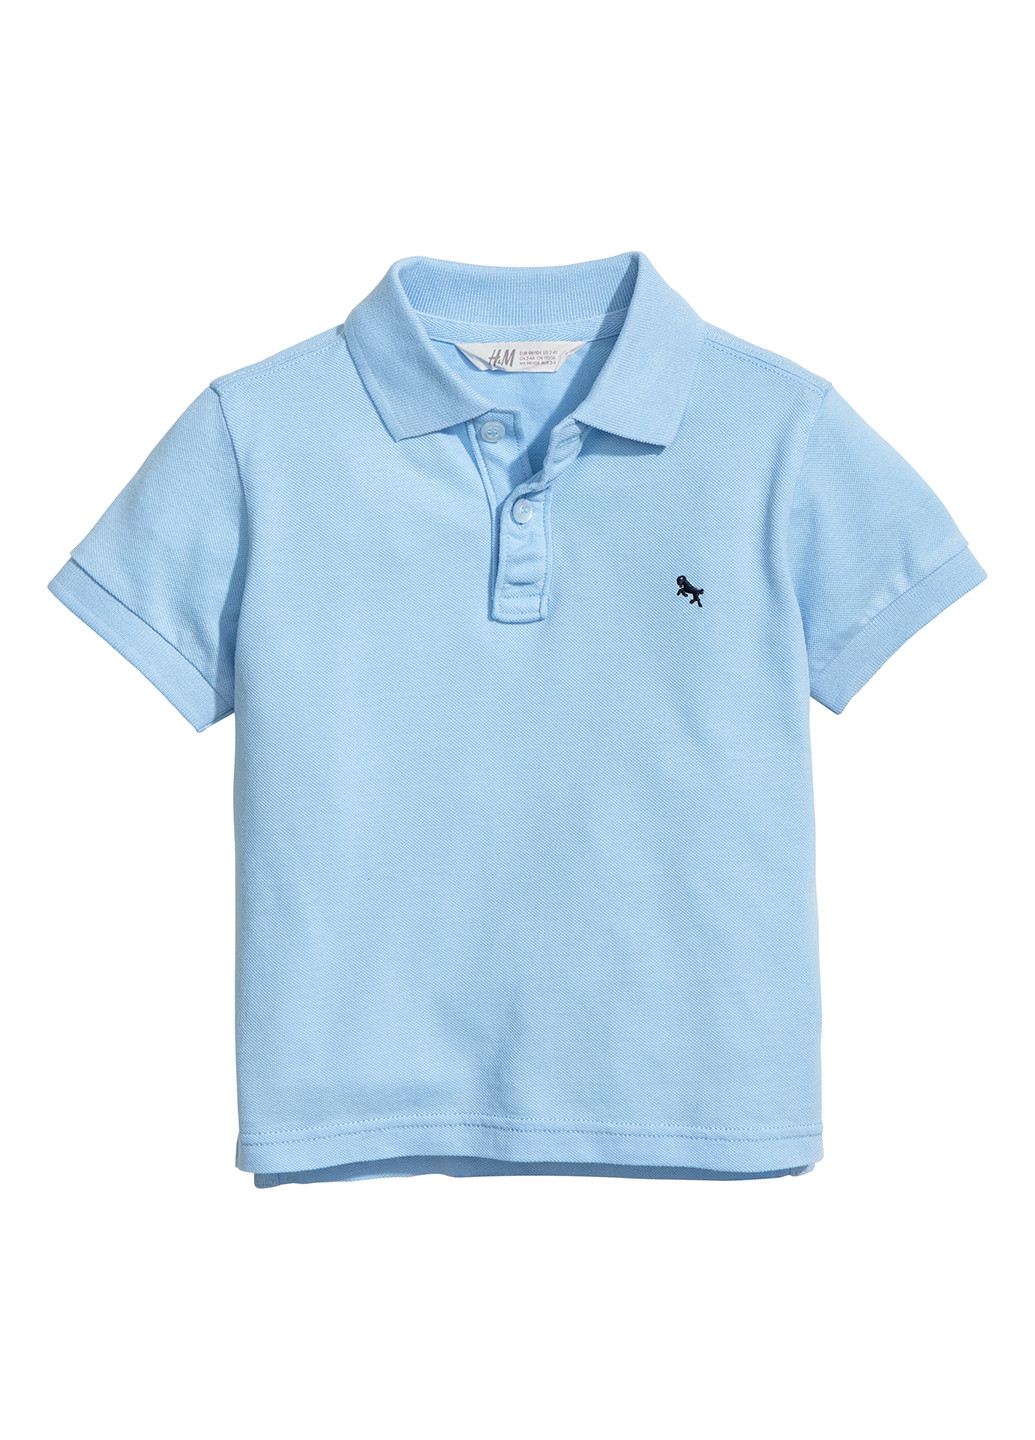 Голубой детская футболка-поло для мальчика H&M с логотипом